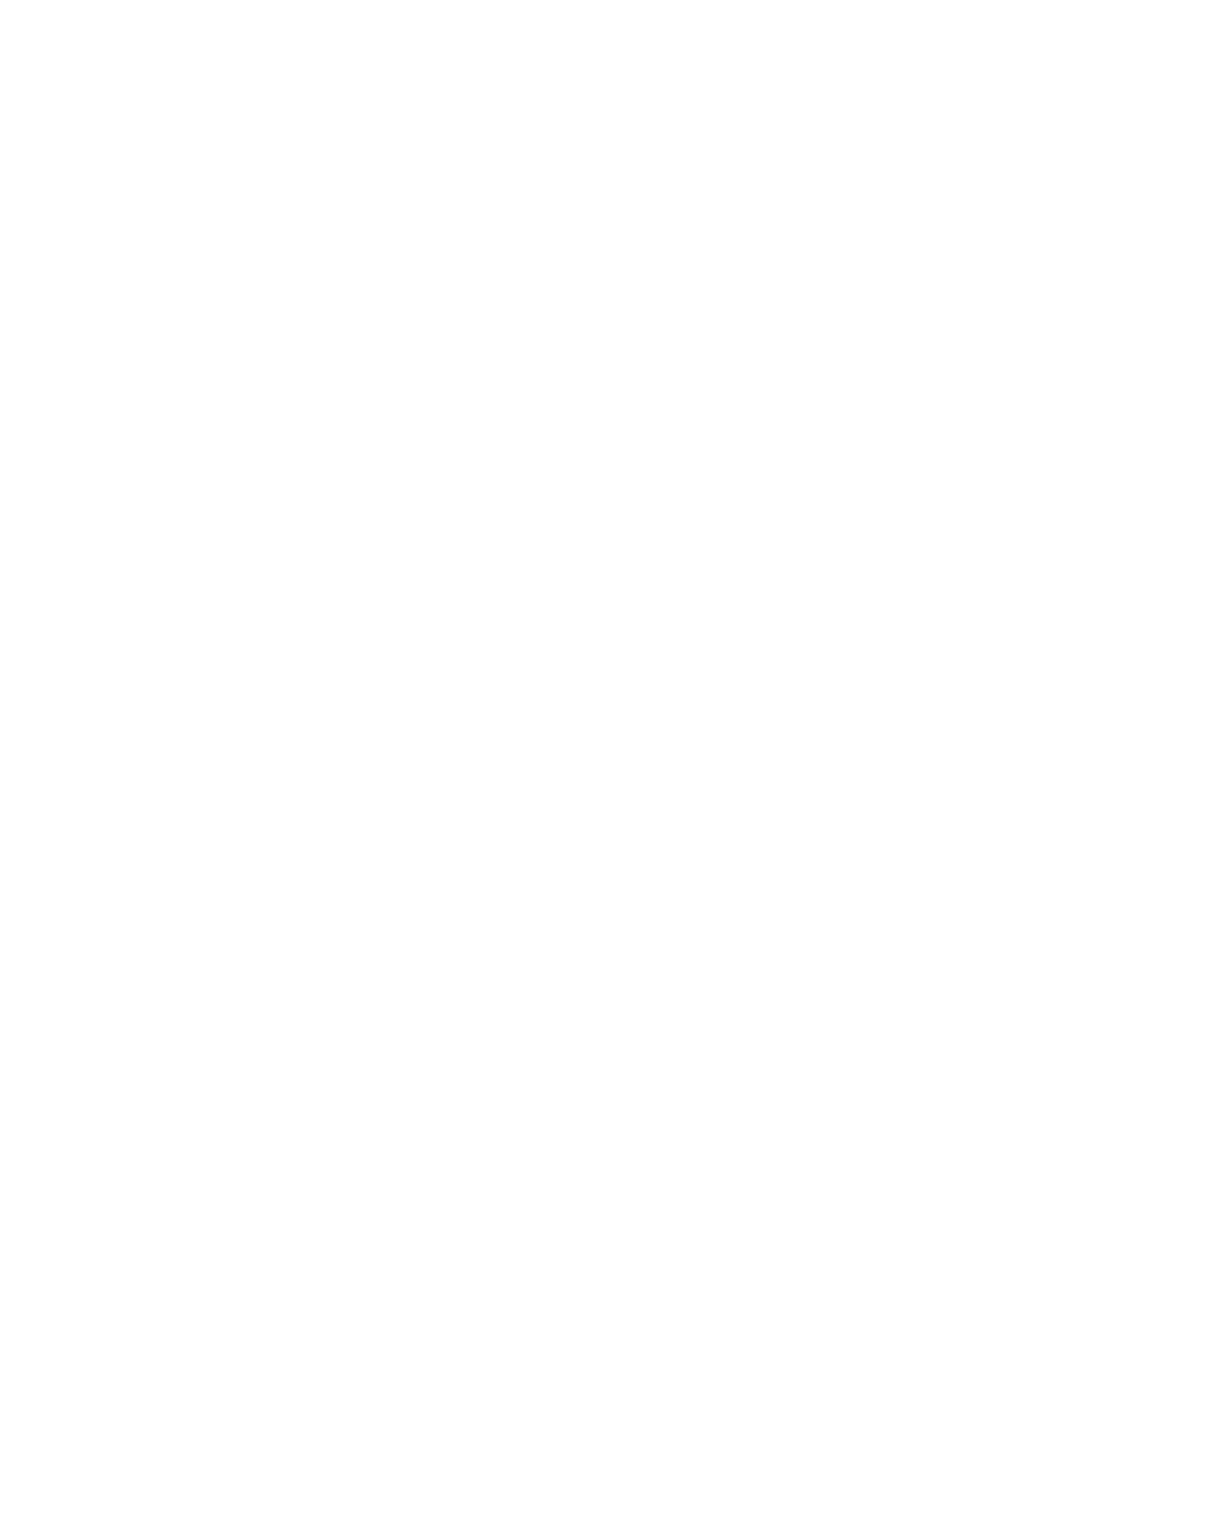 Teva Pharmaceutical Industries logo pour fonds sombres (PNG transparent)